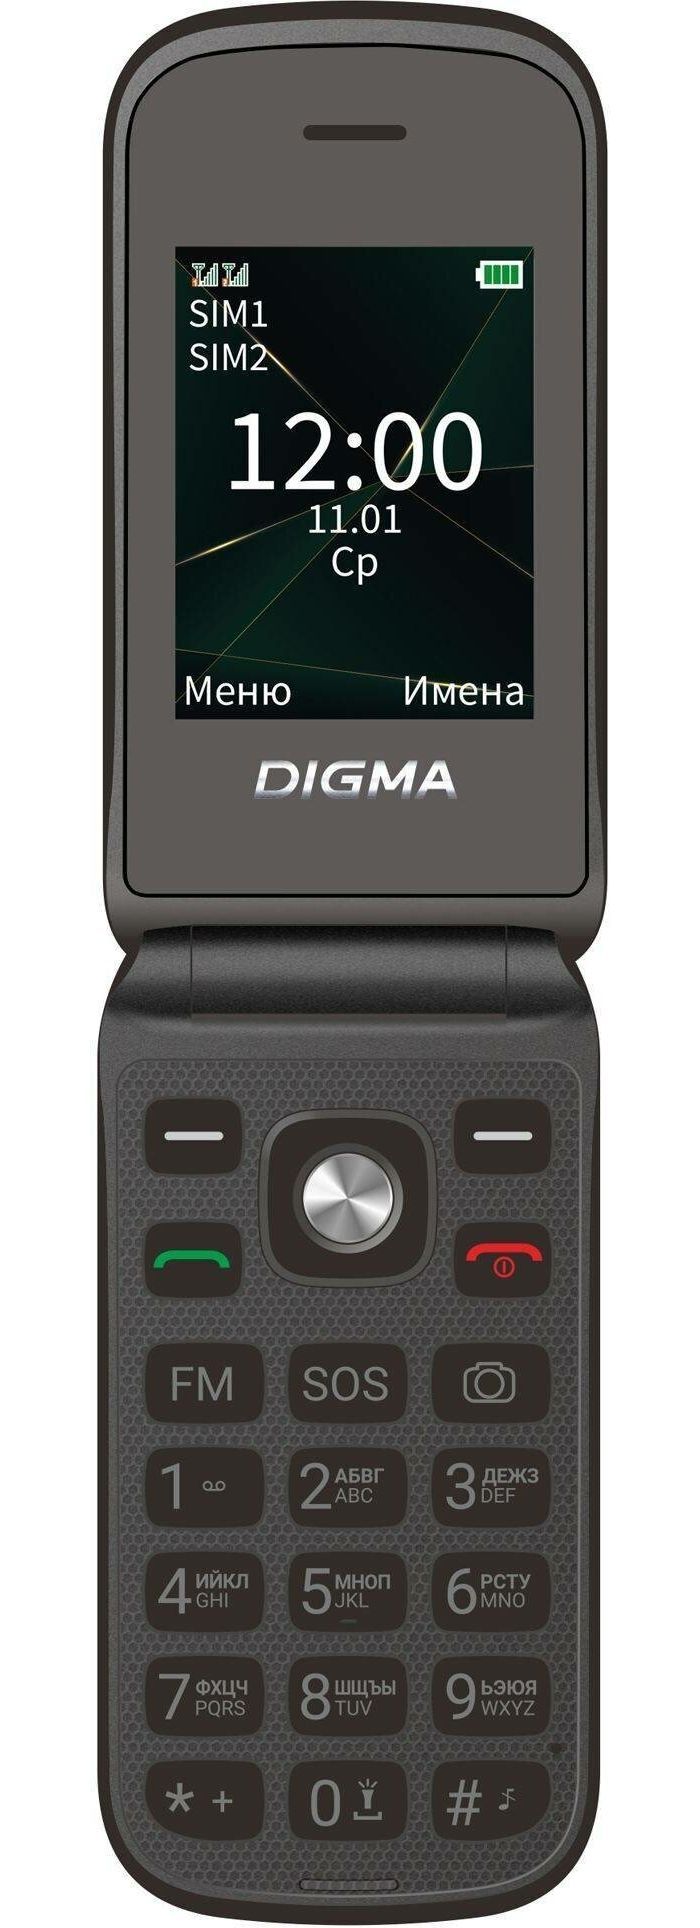 мобильный телефон digma a250 1888916 linx 128mb 0 048 черный моноблок 3g 4g 2sim 2 4 240x320 gsm900 1800 gsm1900 Мобильный телефон Digma VOX FS241 128Mb черный